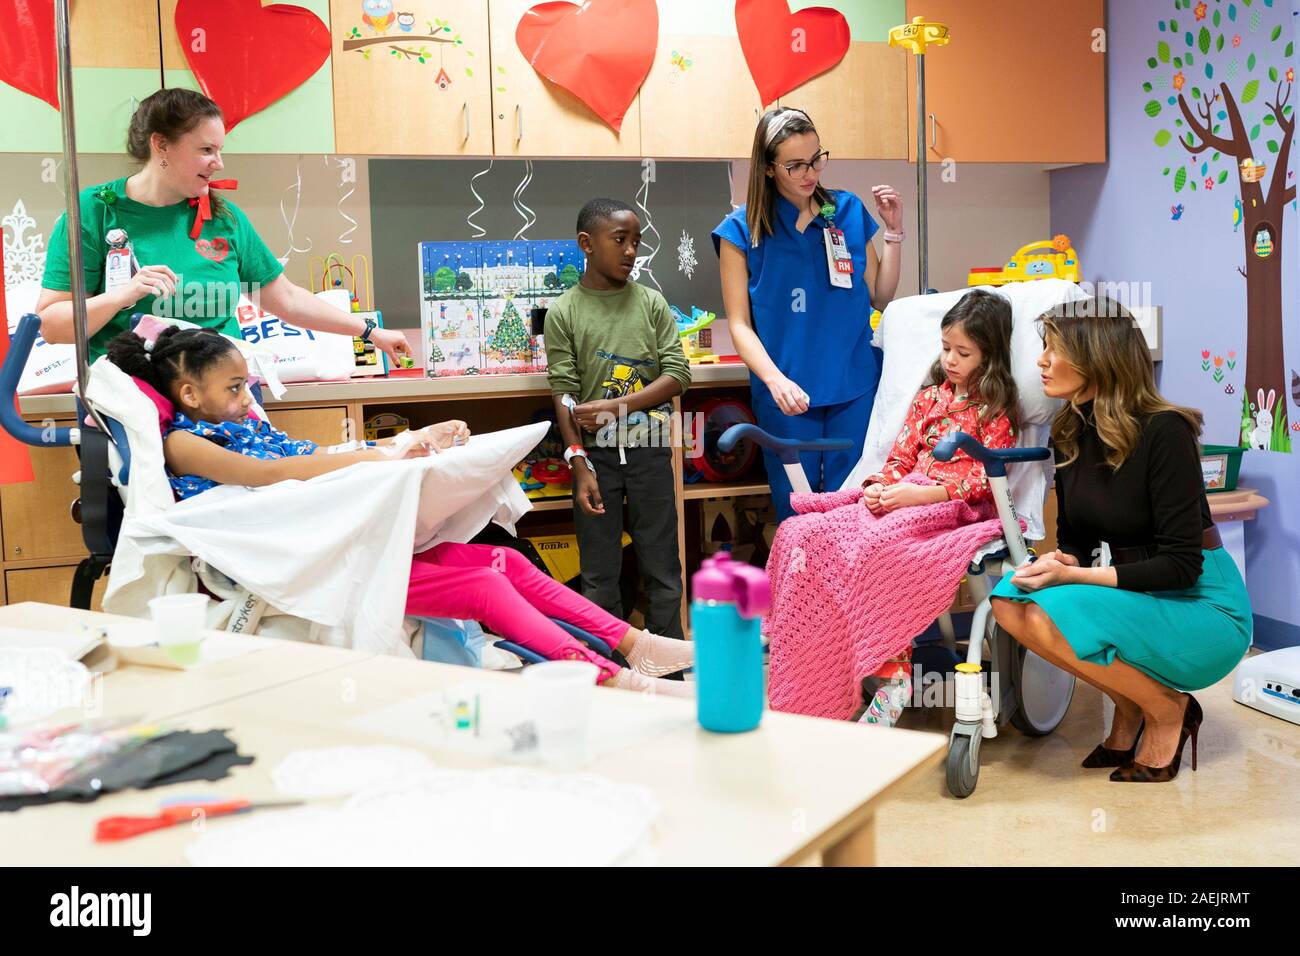 U.S prima signora Melania Trump saluta i pazienti e le loro famiglie dopo aver letto il libro per bambini Oliver l'Ornamento incontra Belle durante una visita natalizia per bambini Ospedale nazionale il 6 dicembre 2019 a Washington, DC. Foto Stock